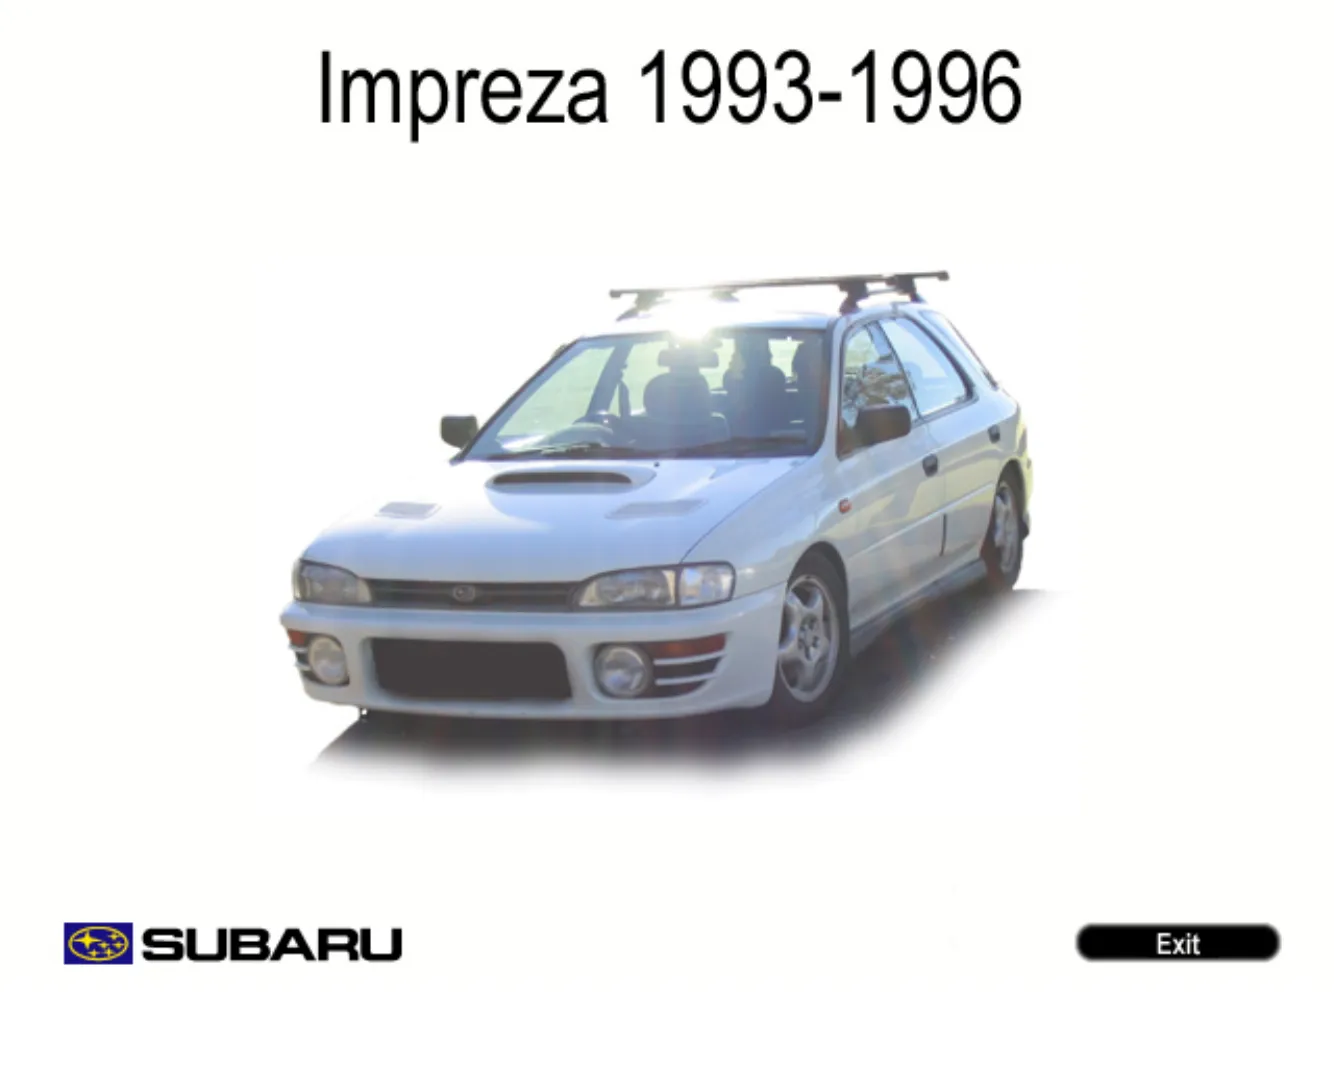 1993-1998 Subaru Impreza repair manual